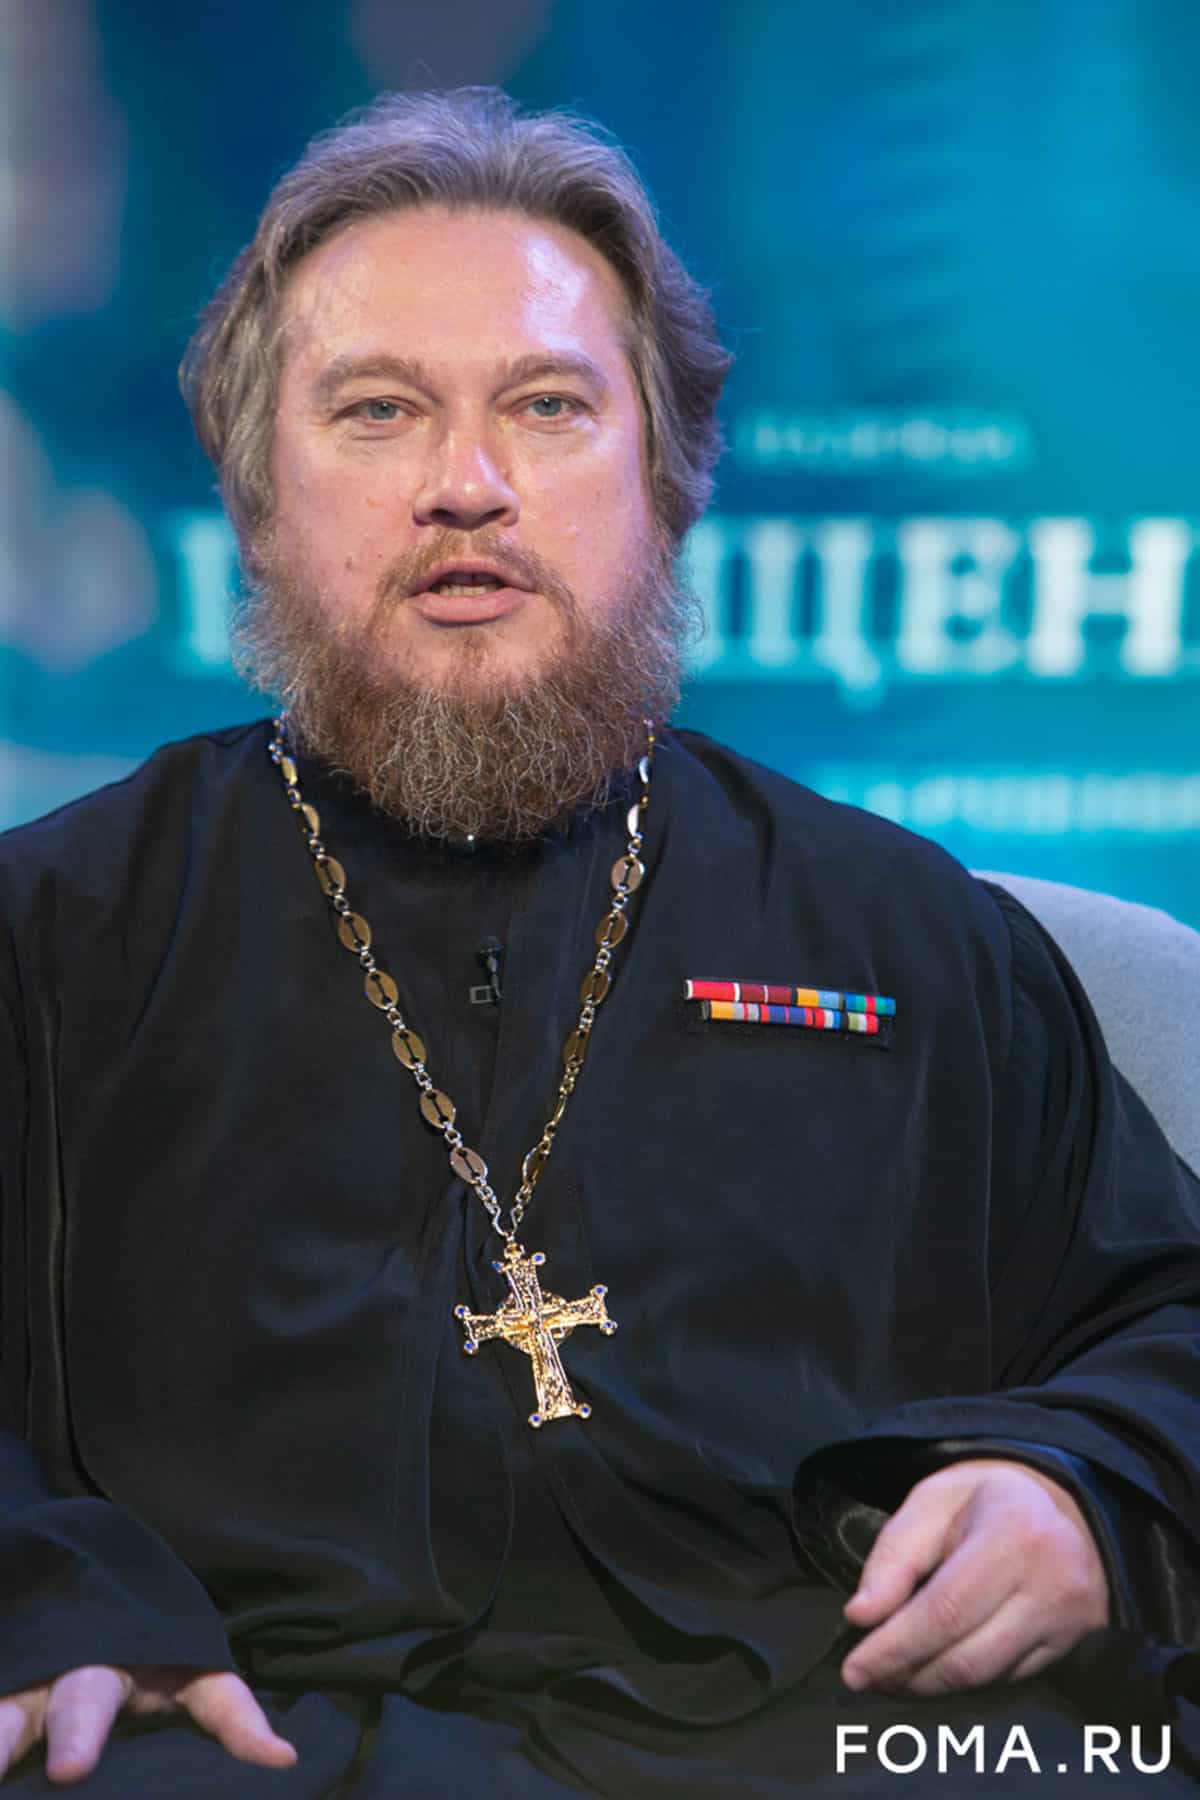 «Мы видели жуткие пытки, которым подвергали христиан в Сирии», — военный священник Михаил Васильев